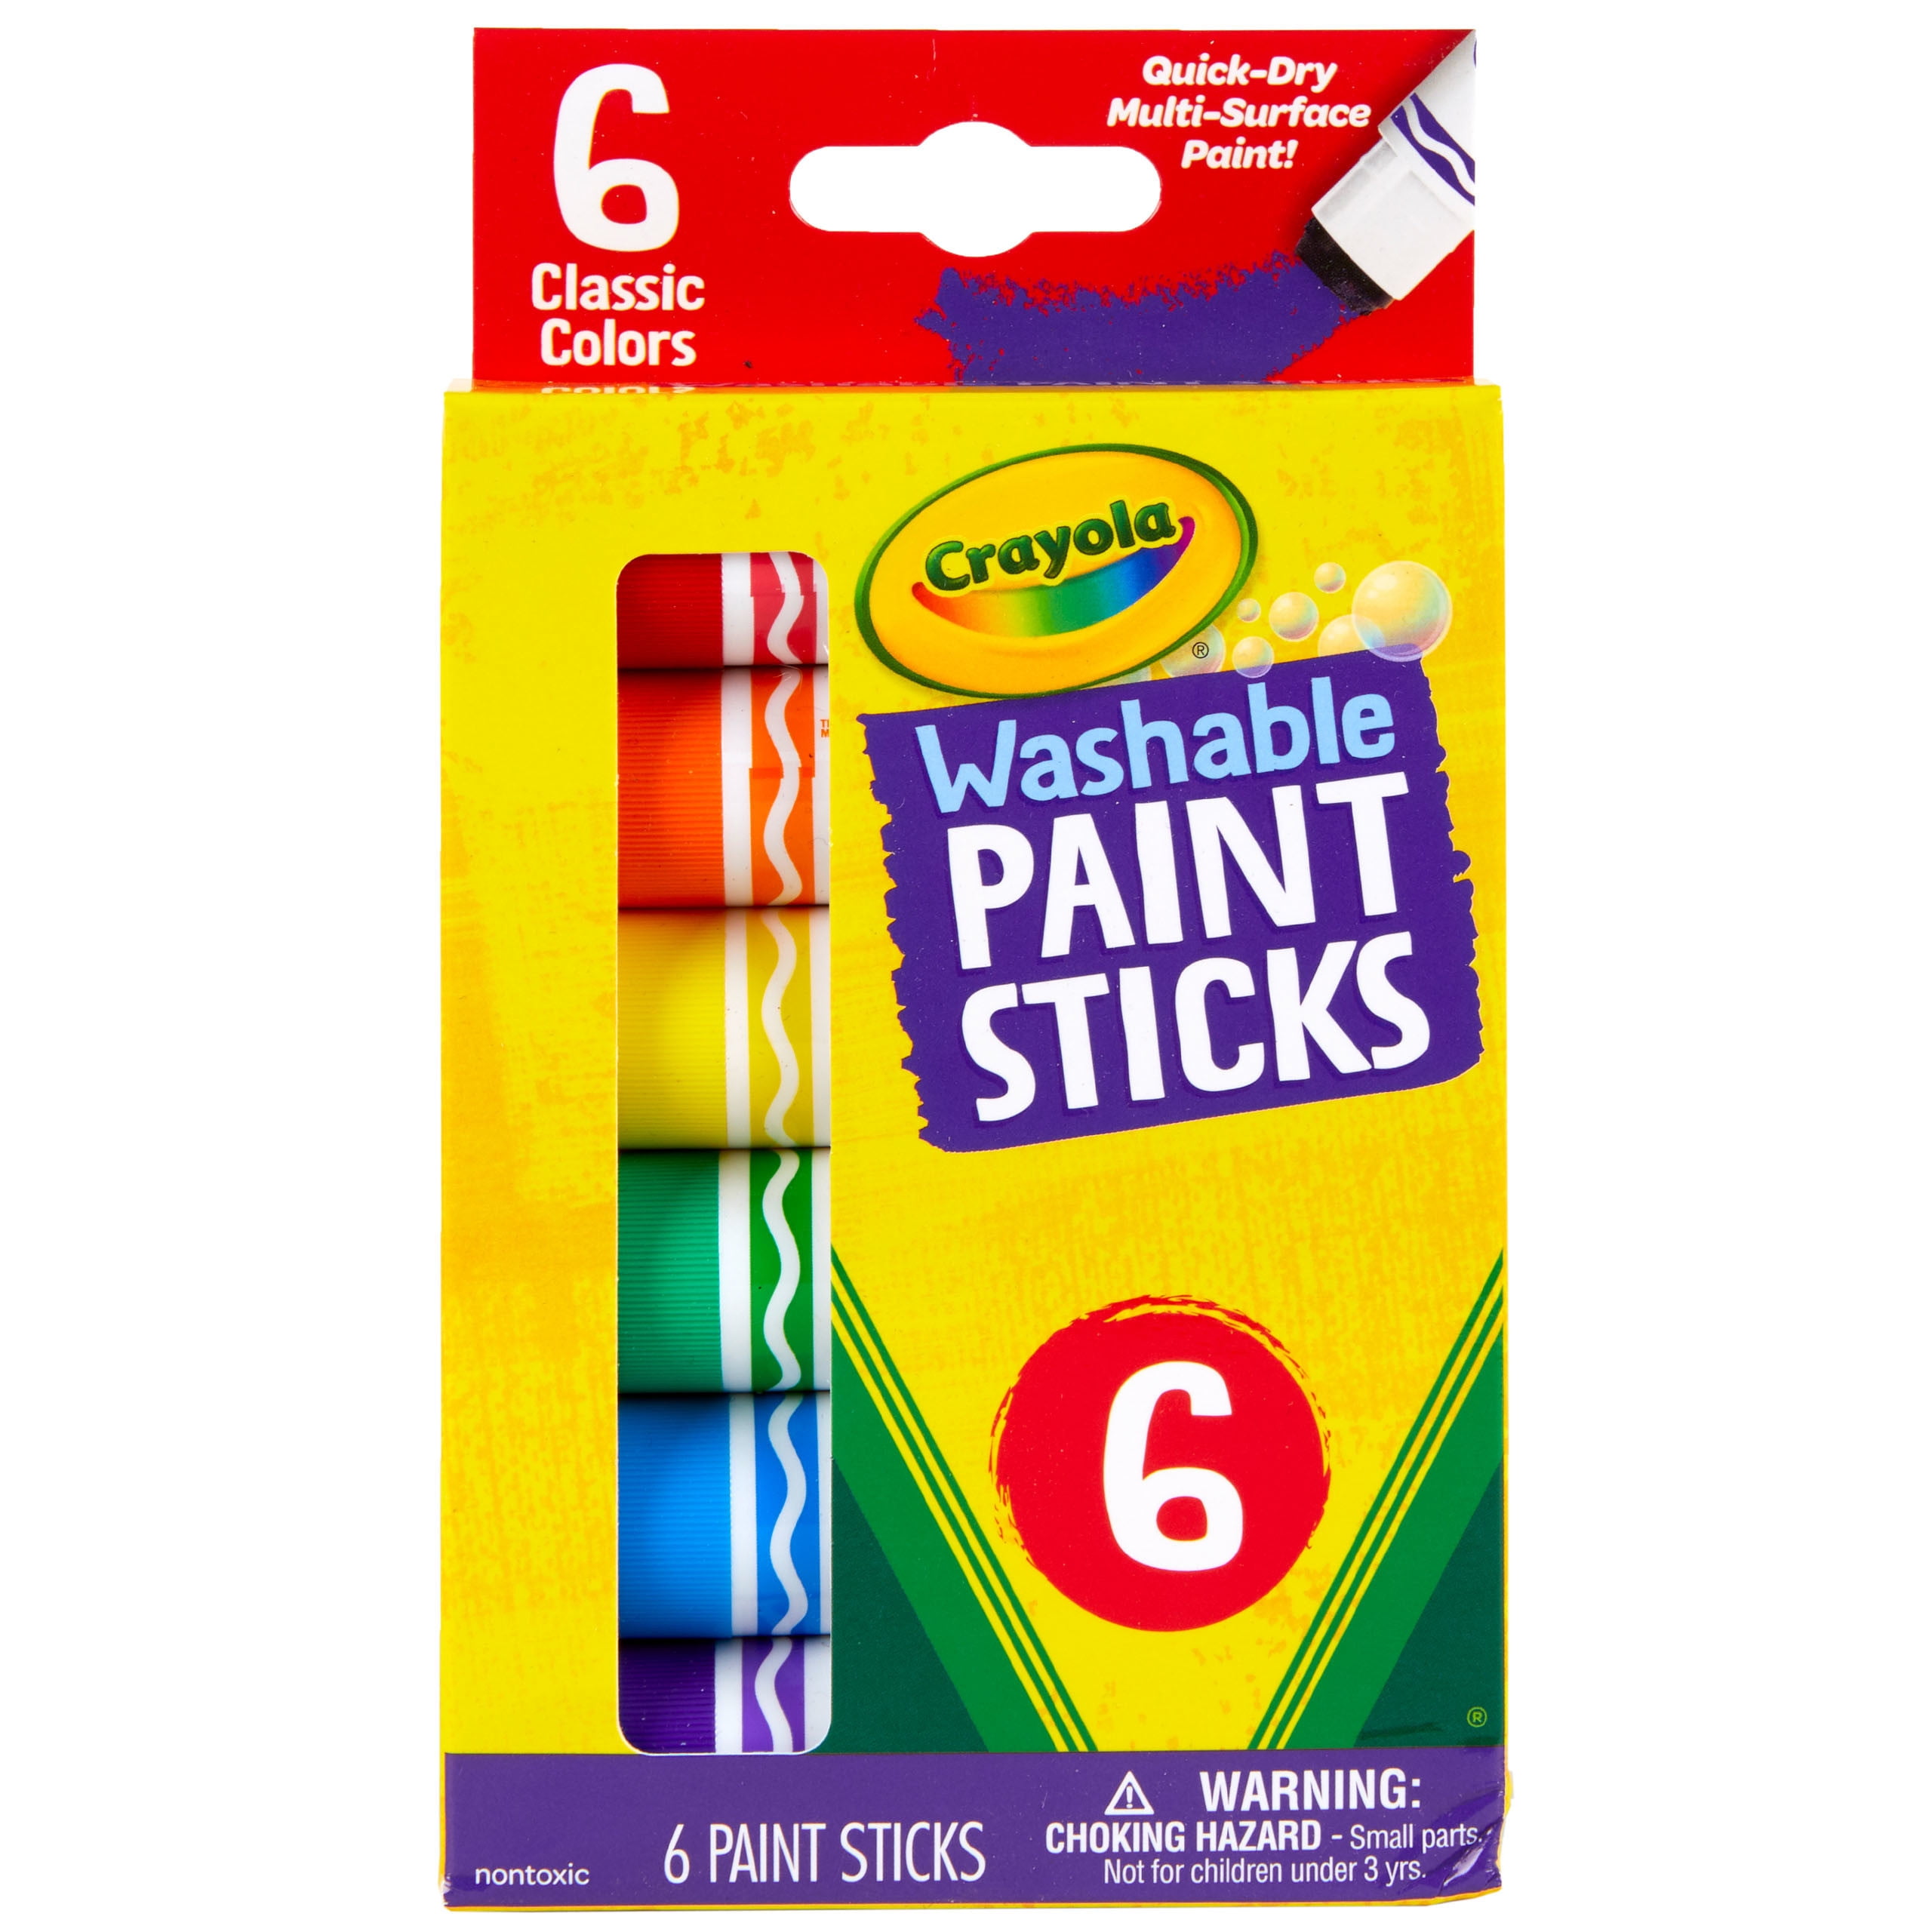 Art Box - Coloring Kit For Girls 54Pcs Pack